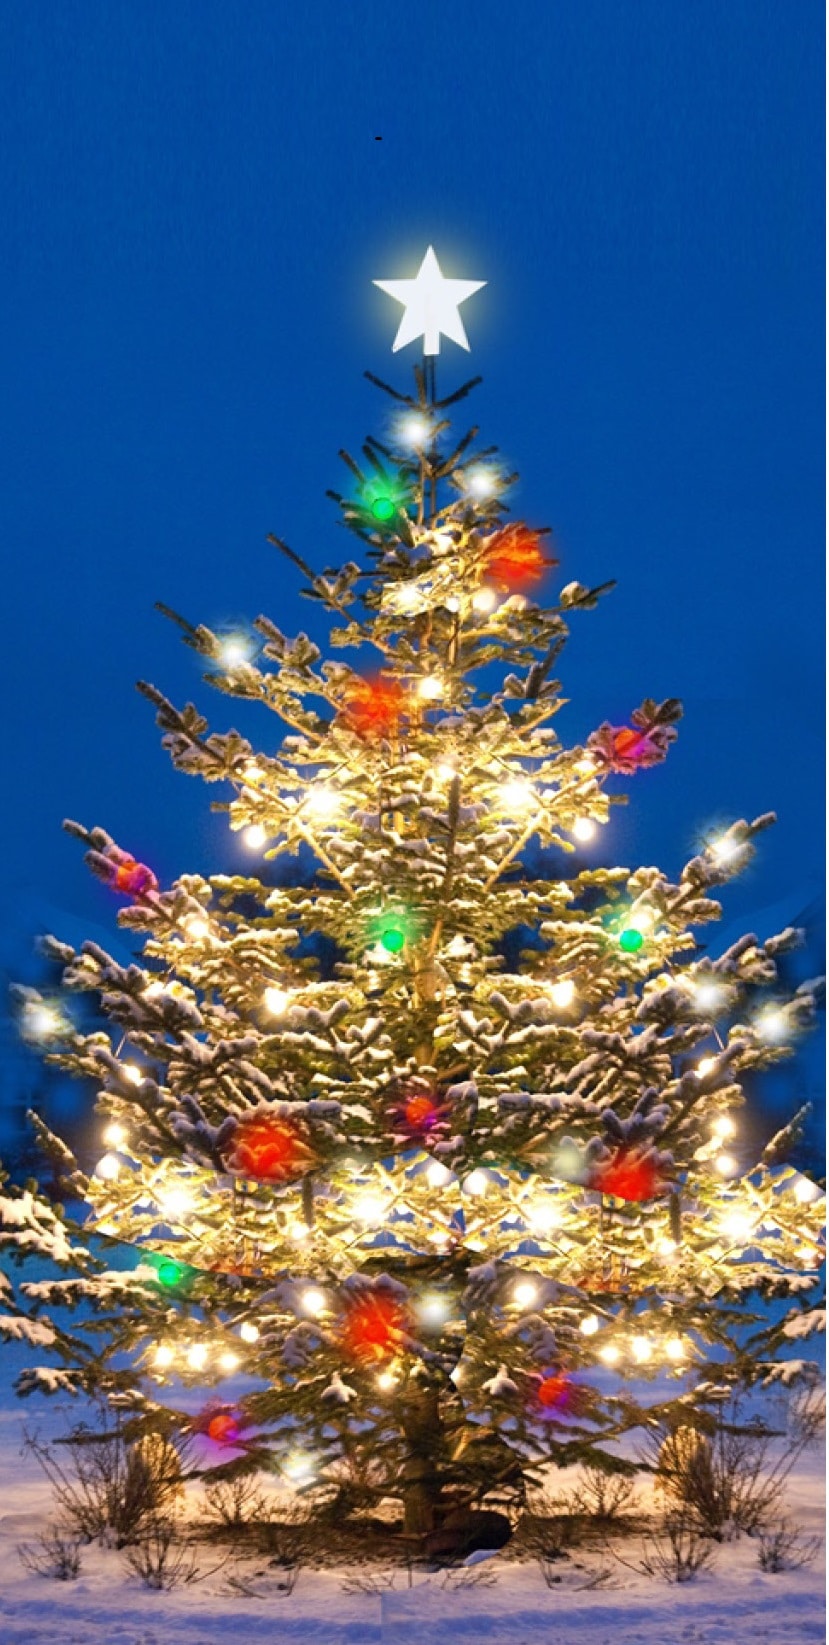 POZVÁNKA: Rozsvícení vánoční stromu